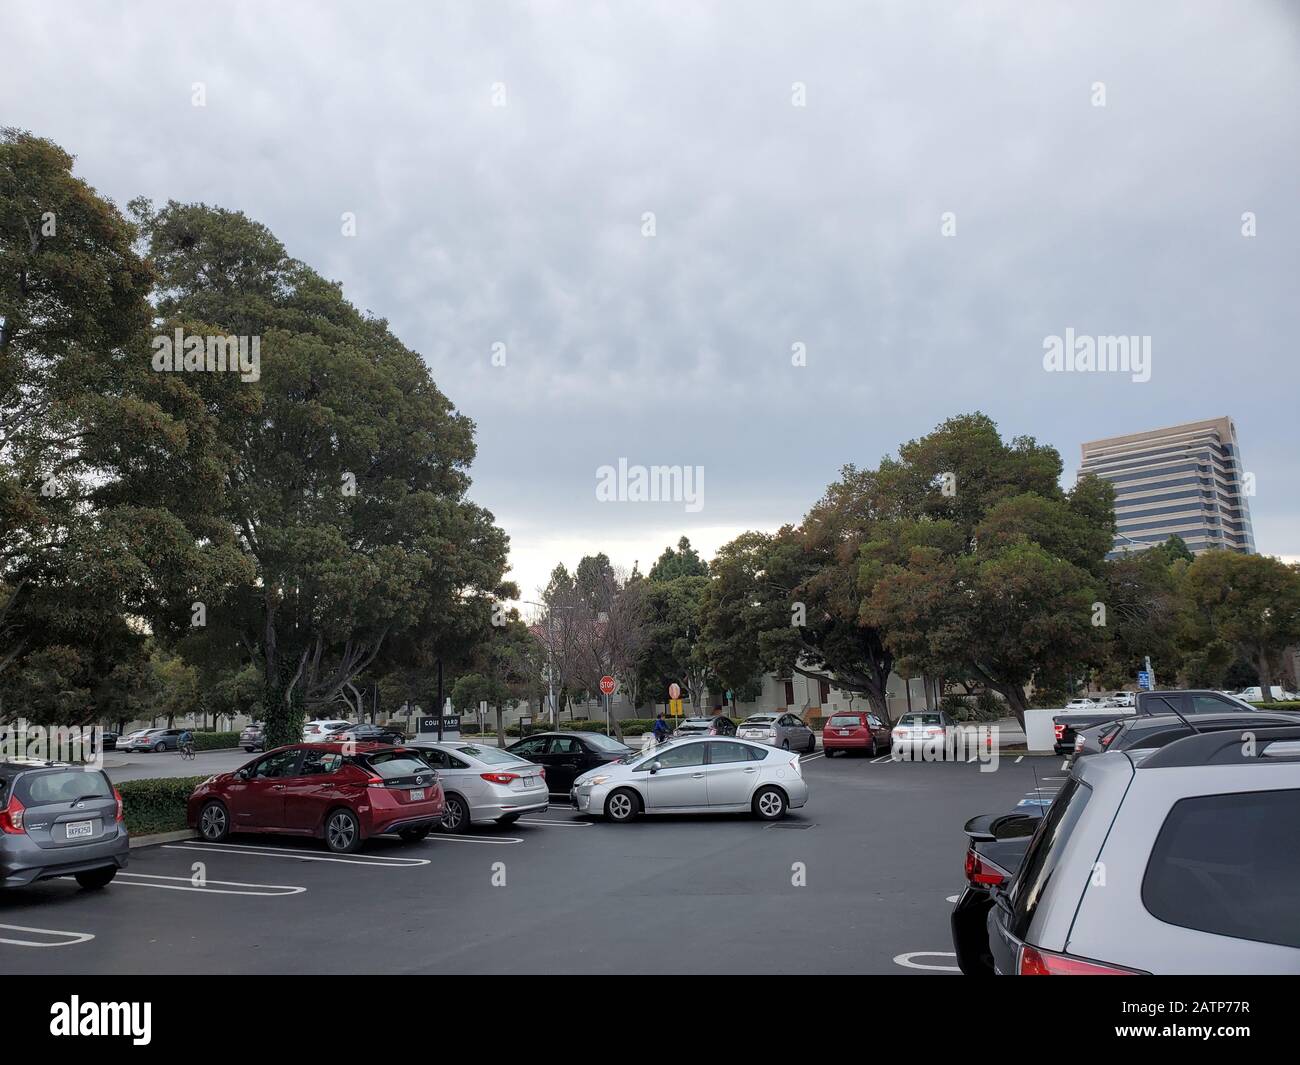 Le auto sono visibili in un parcheggio nella Silicon Valley, con la sede di Visa Inc visibile sullo sfondo, Foster City, California, 19 gennaio 2020. () Foto Stock